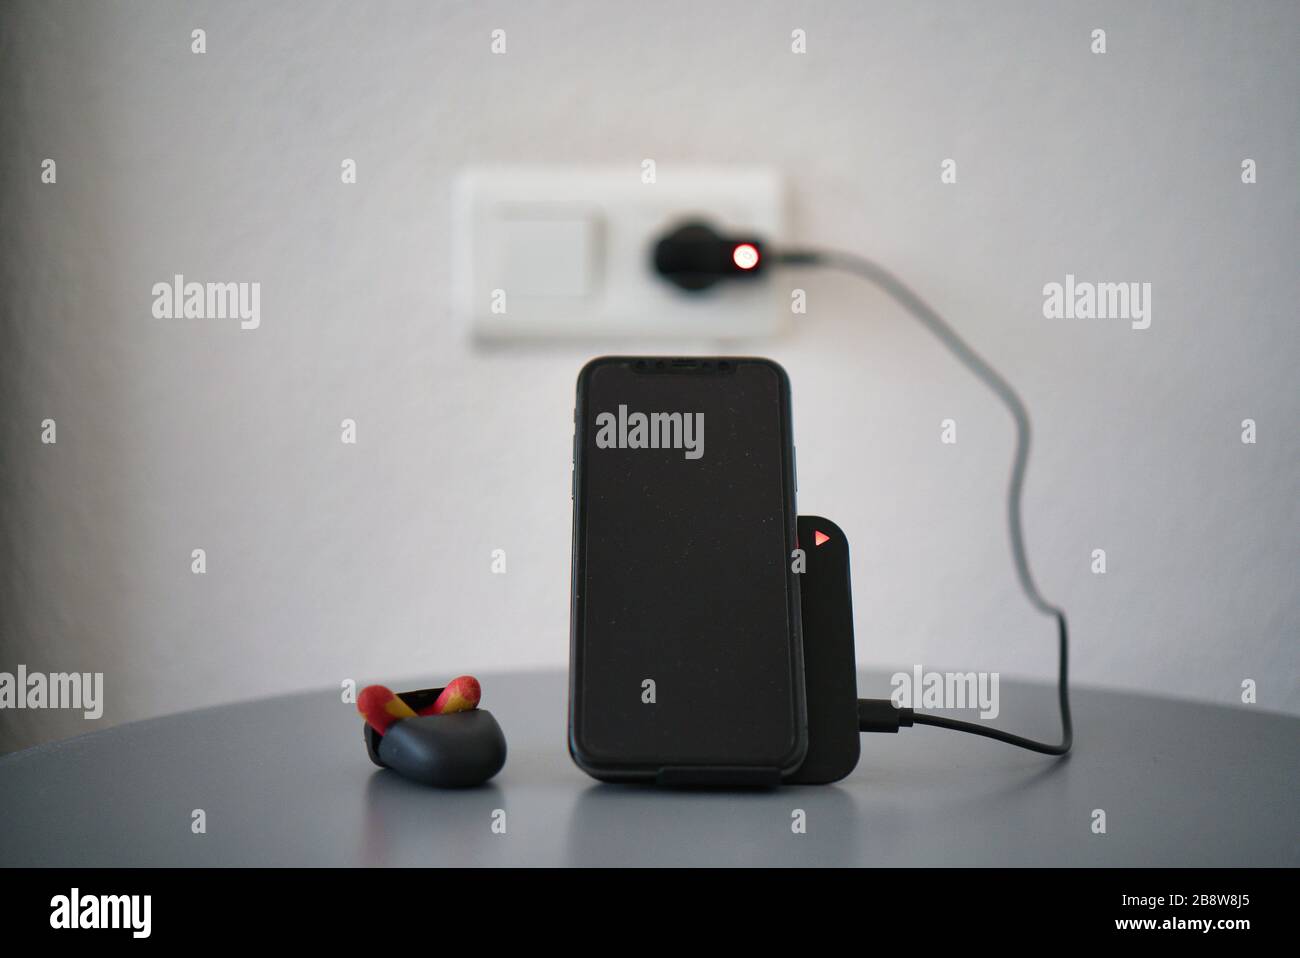 Caricabatterie wireless nero da tavolo con LED di ricarica per ricaricare uno smartphone. Display nero. Tavolo grigio argento. Tappi per le orecchie sul comodino Foto Stock